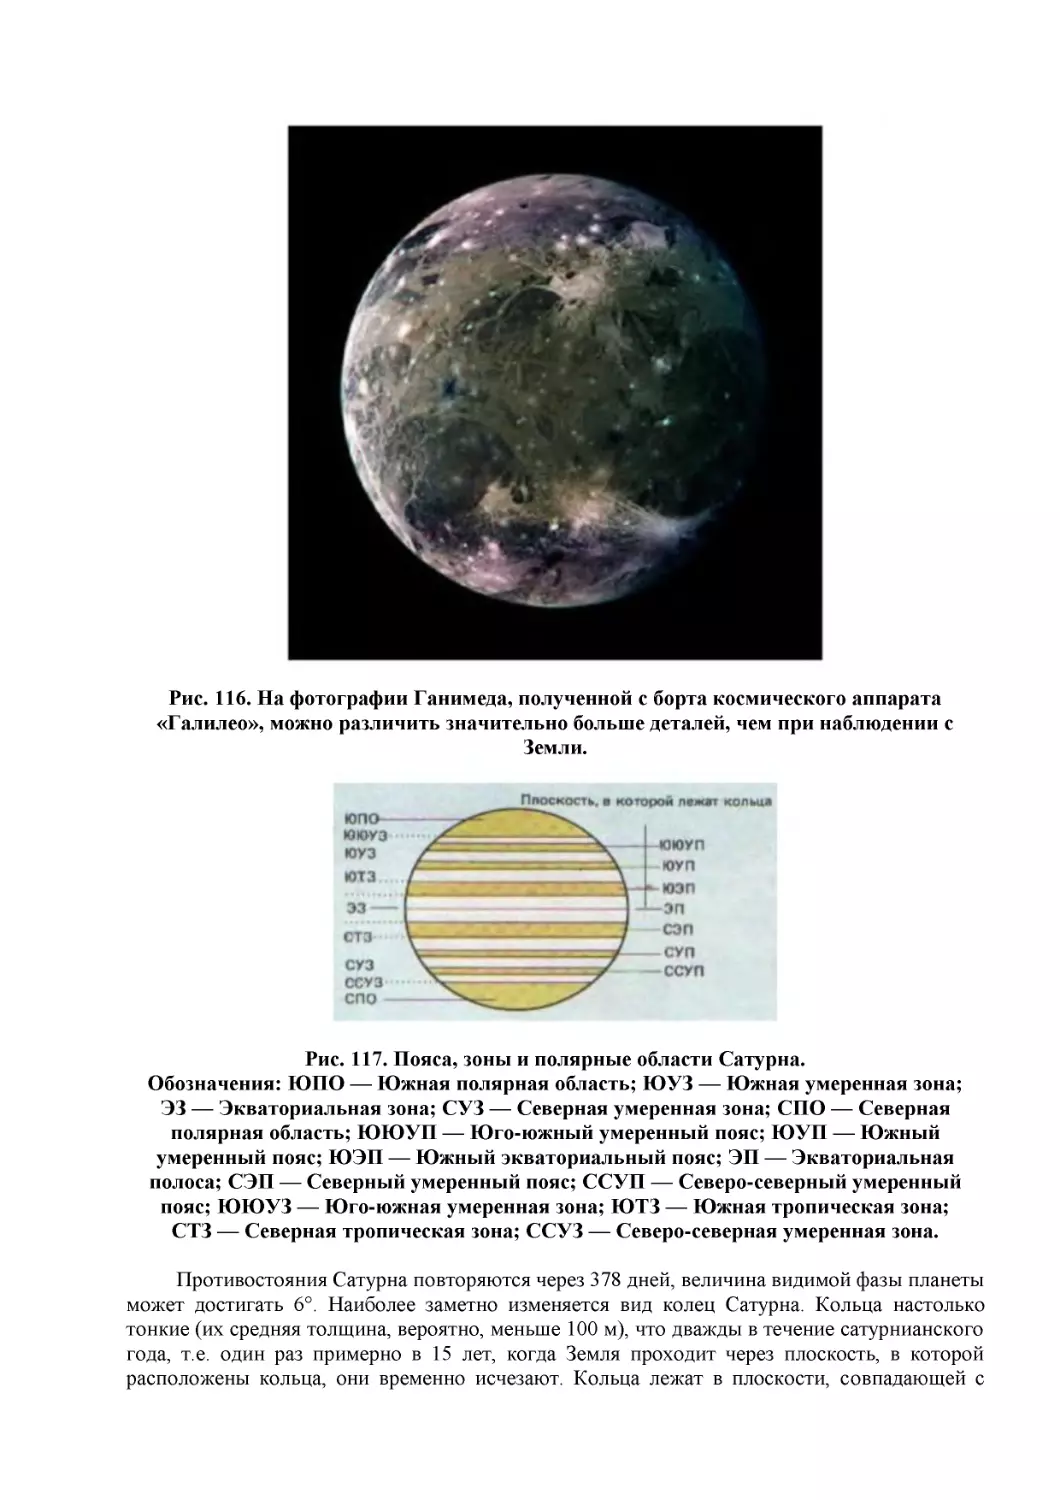 Рис. 116. На фотографии Ганимеда, полученной с борта космического аппарата «Галилео», можно различить значительно больше деталей, чем при наблюдении с Земли.
Рис. 117. Пояса, зоны и полярные области Сатурна.
Обозначения